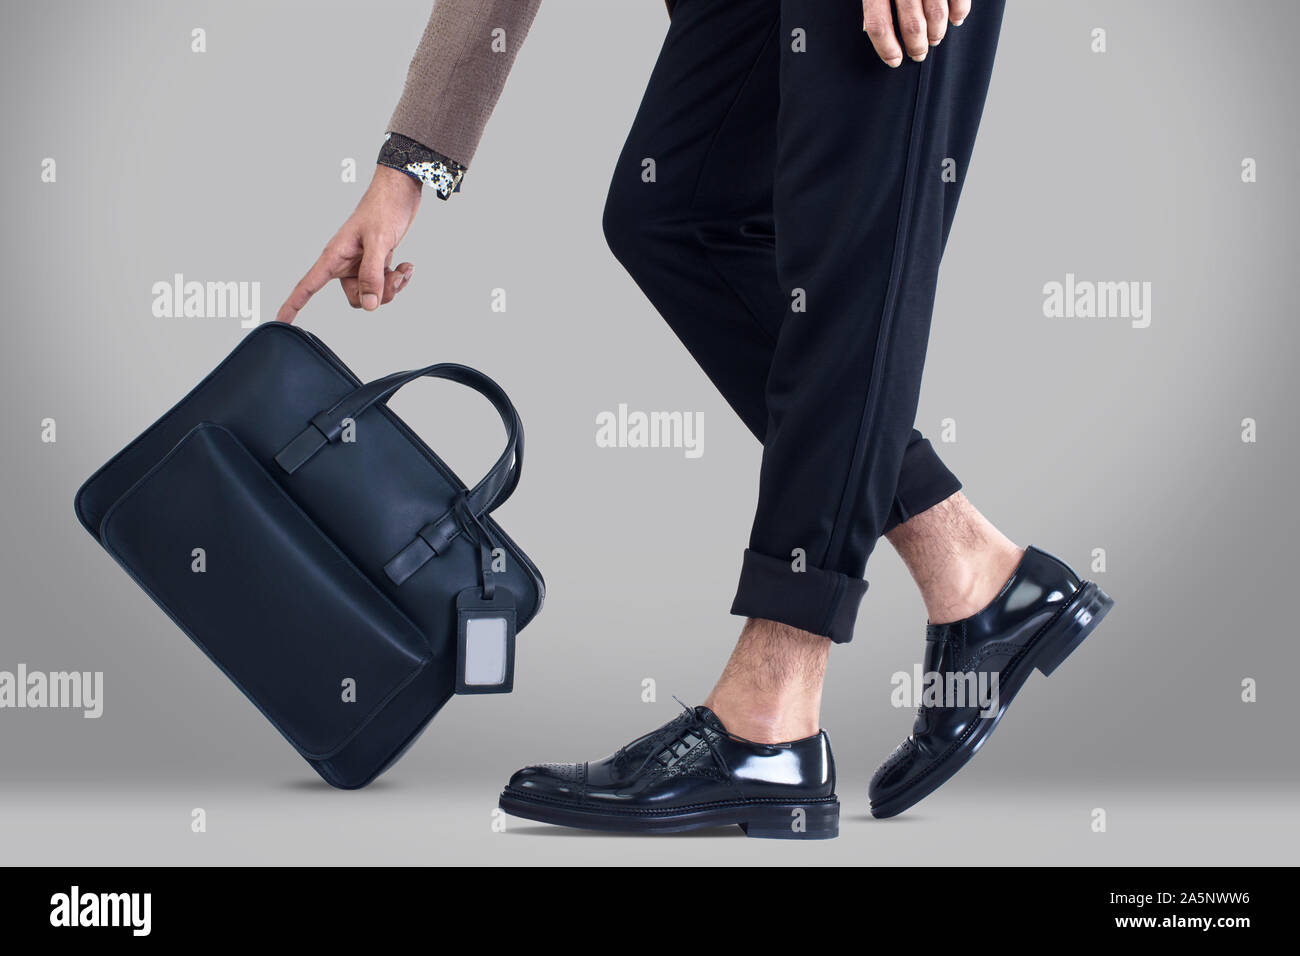 Smart Business Kleidung mit Tragetasche, No-Name-Marken für Werbekampagnen,  Corporate Business Bilder Stockfotografie - Alamy